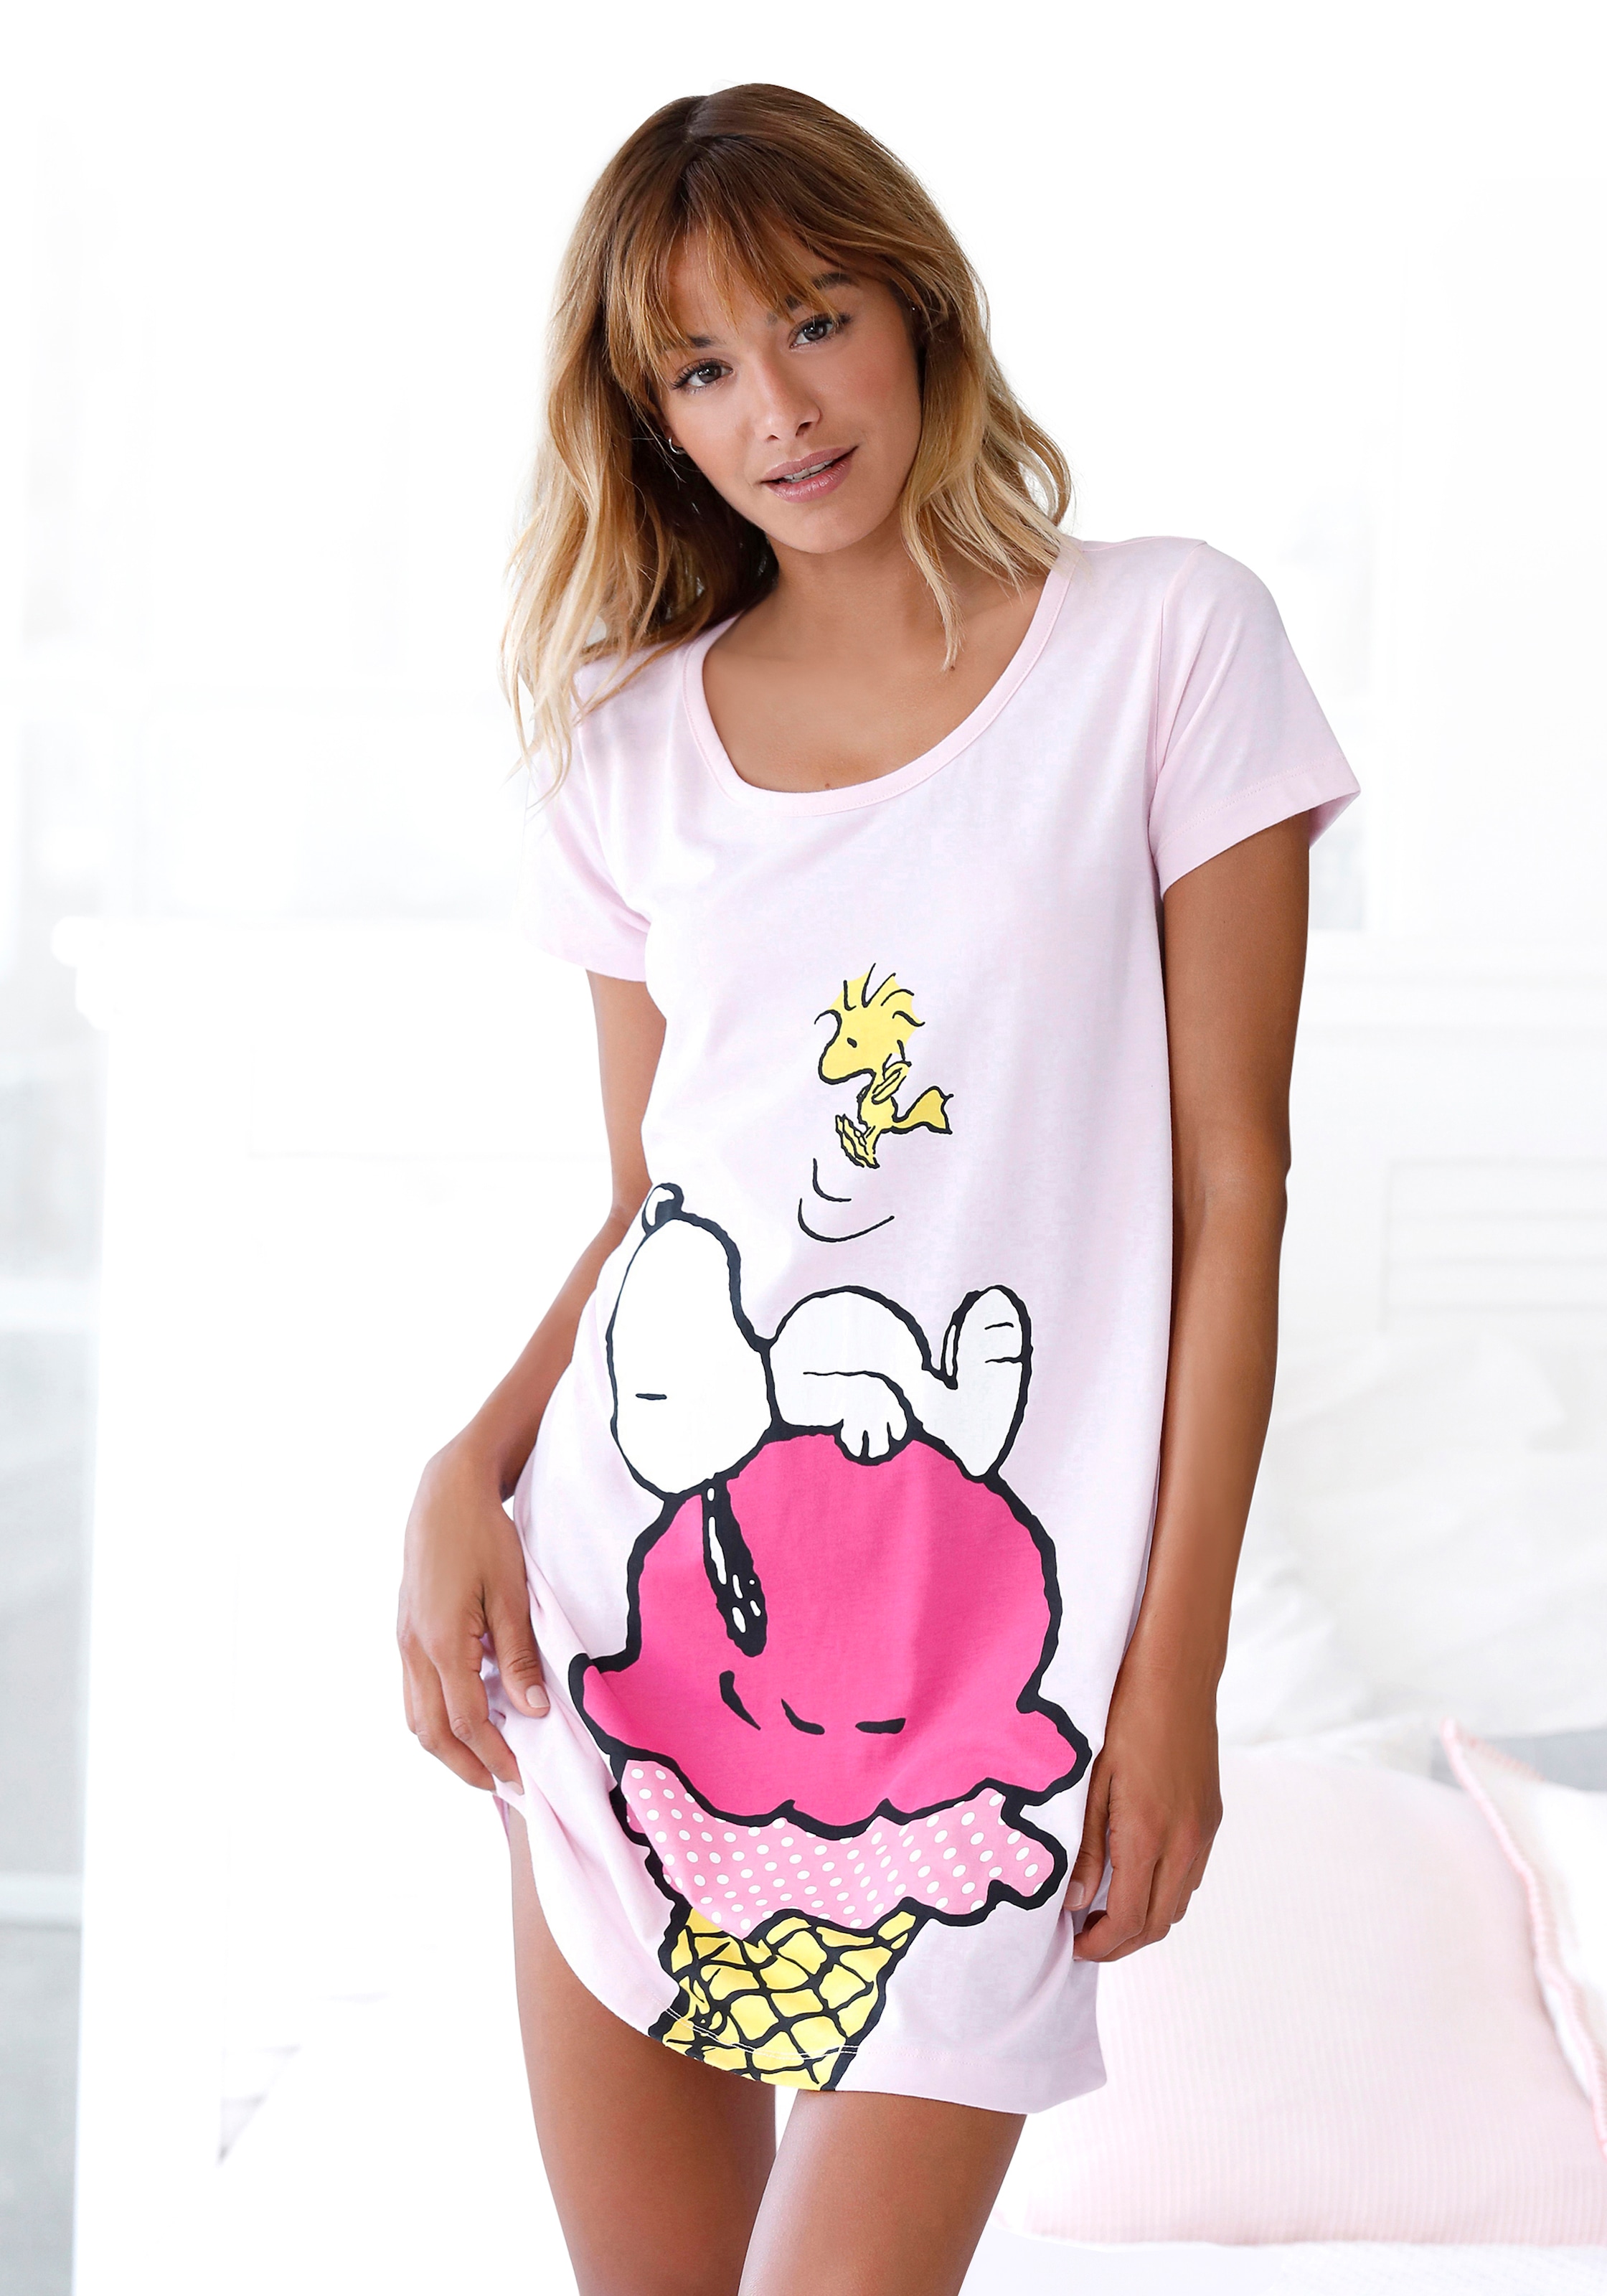 großem Sleepshirt, Peanuts mit OTTO bestellen Snoopy-Motiv bei